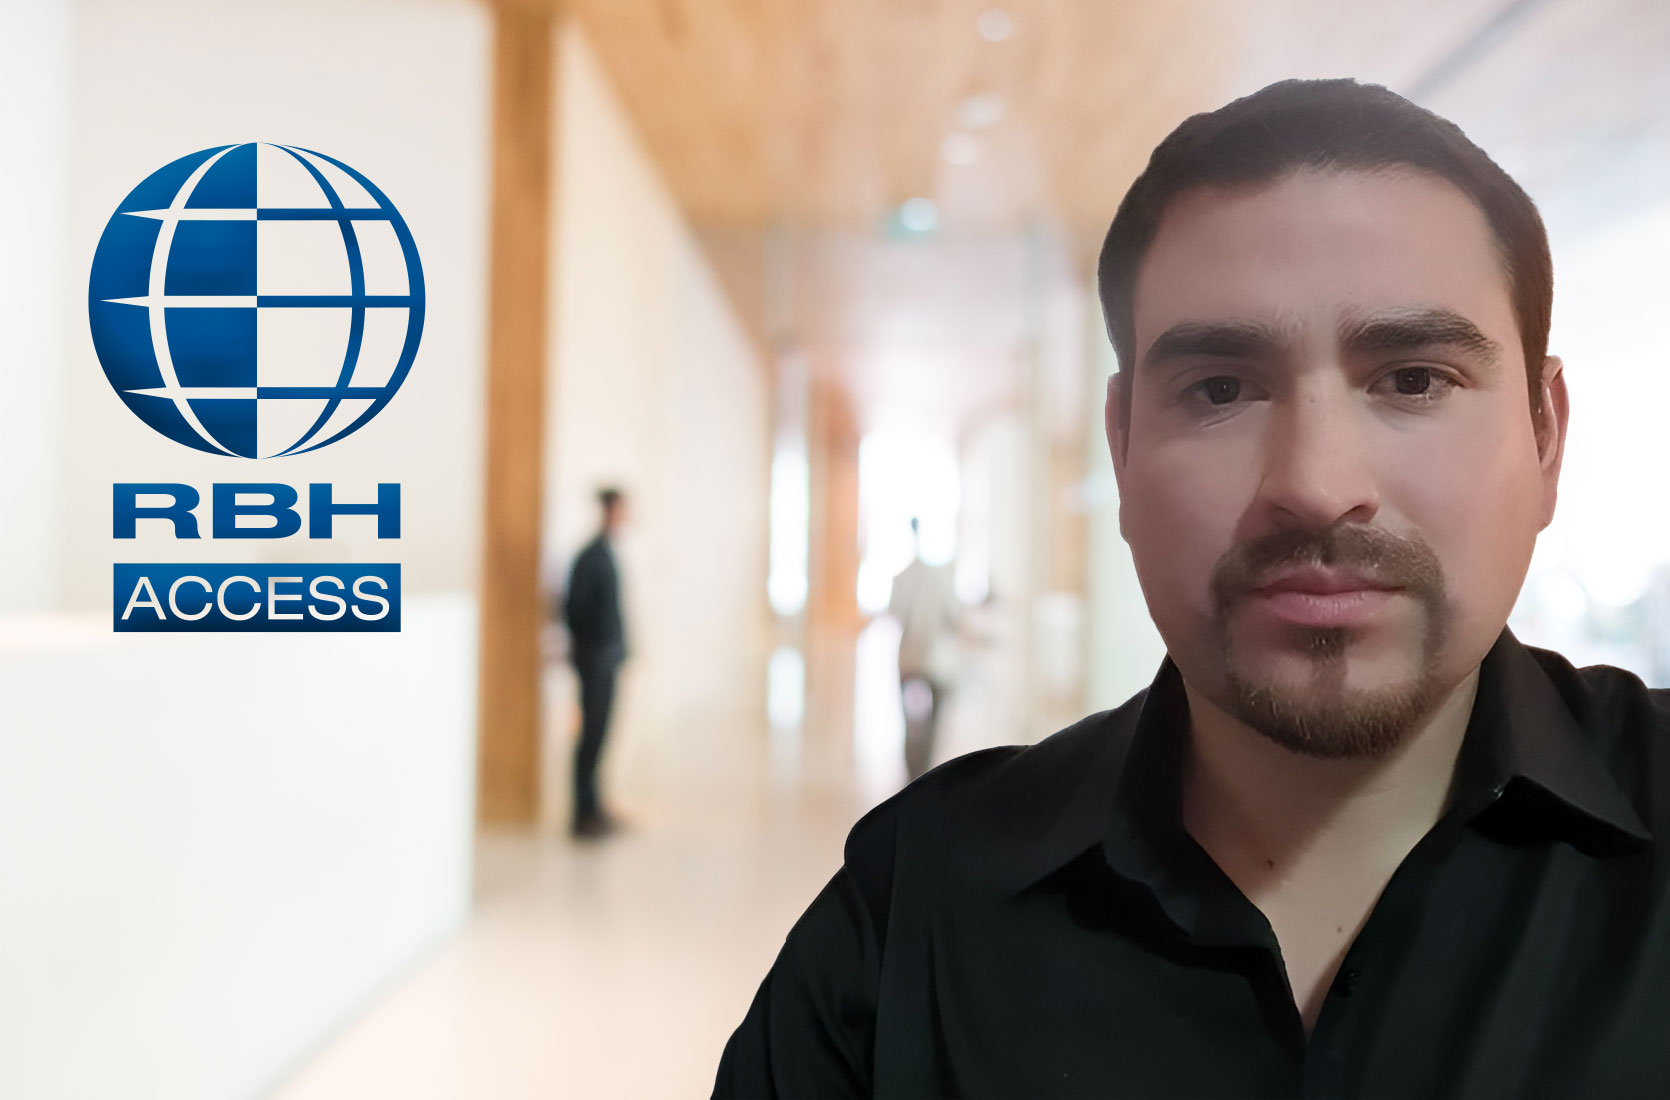 Jonatán Reyes Se une al equipo de RBH Access Technologies como Gerente Regional de Ventas para el Cono Sur